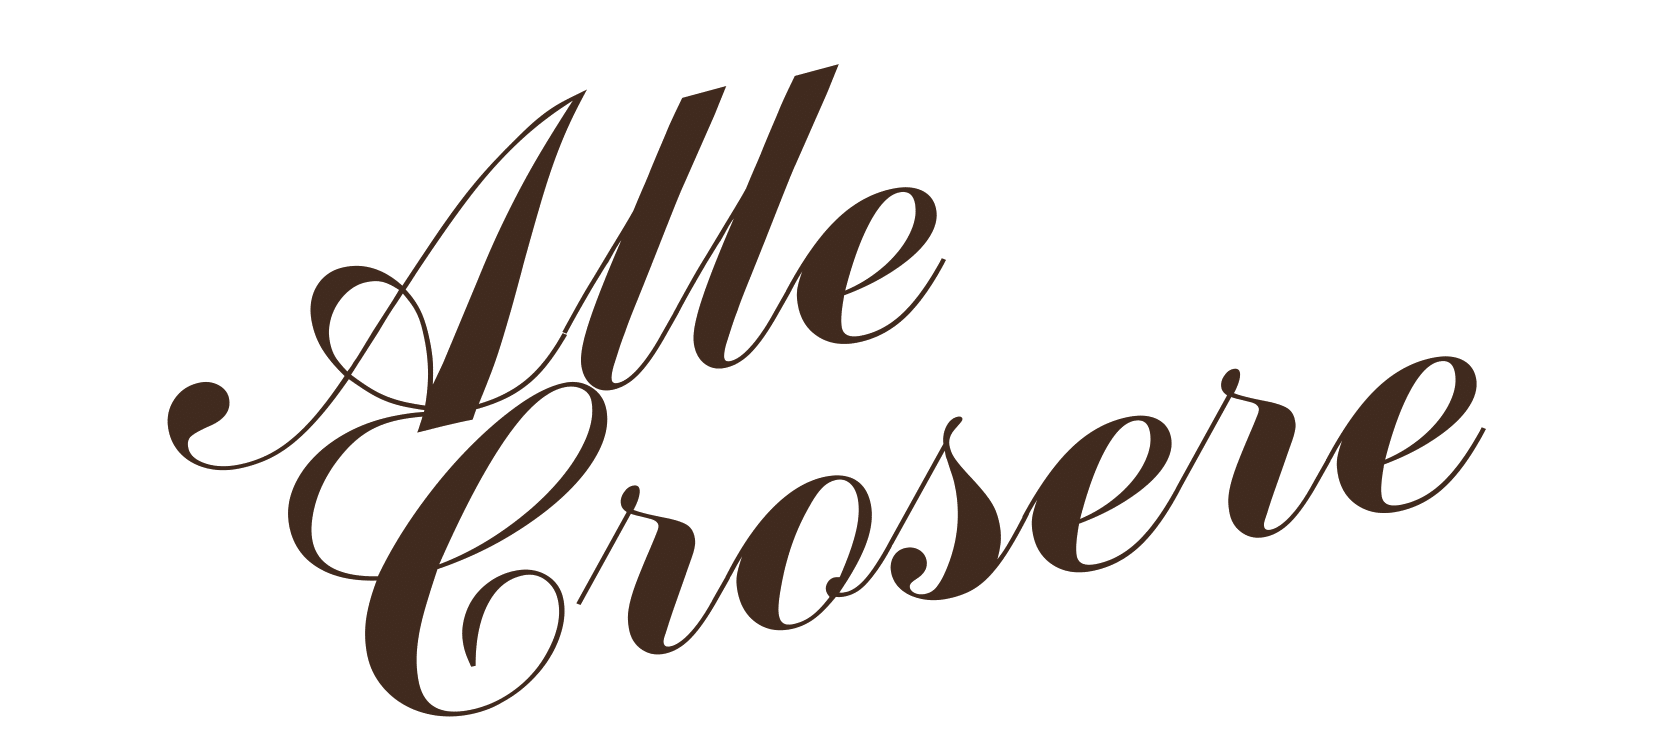 Alle Crosere logo1-1